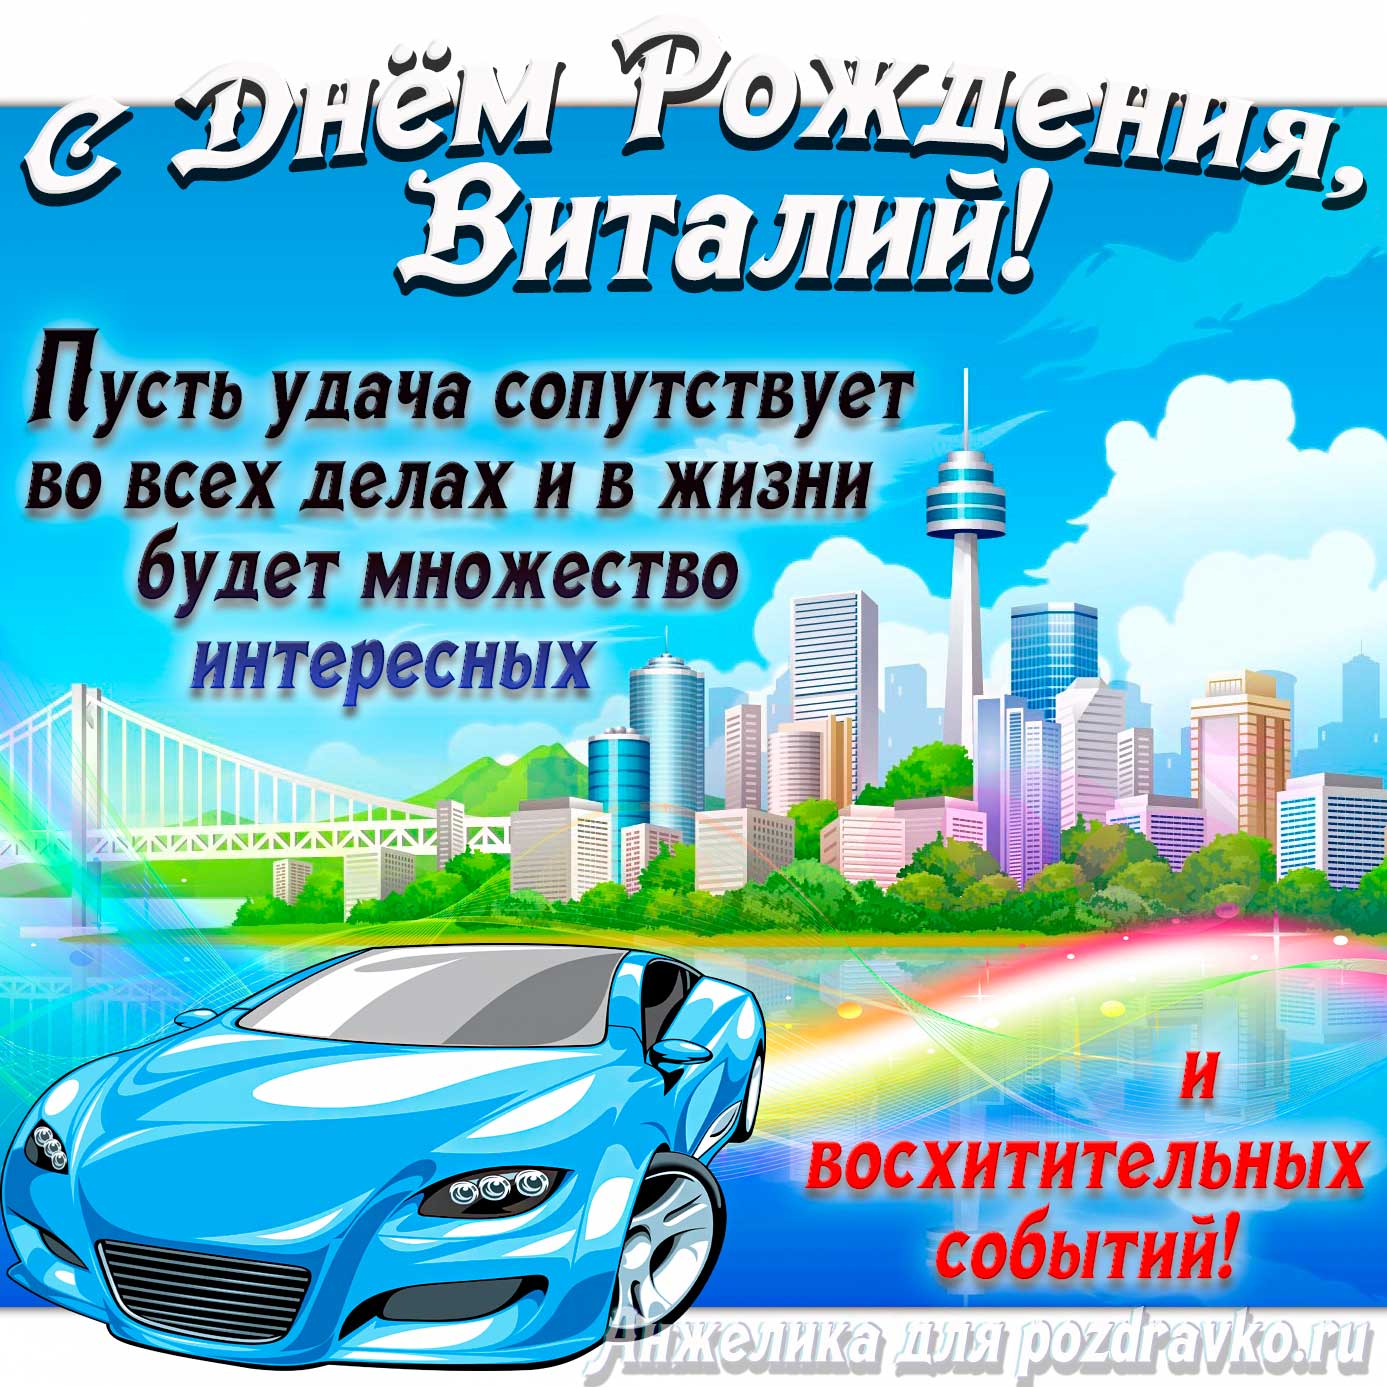 Открытка - с Днём Рождения Виталий с голубой машиной и пожеланием. Скачать бесплатно или отправить картинку.